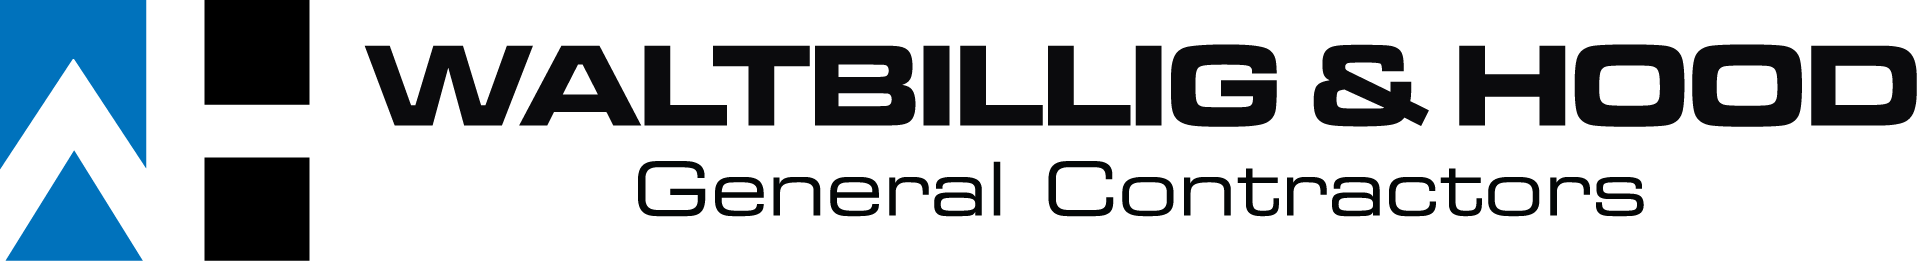 Waltbillig & Hood General Contractors, LLC